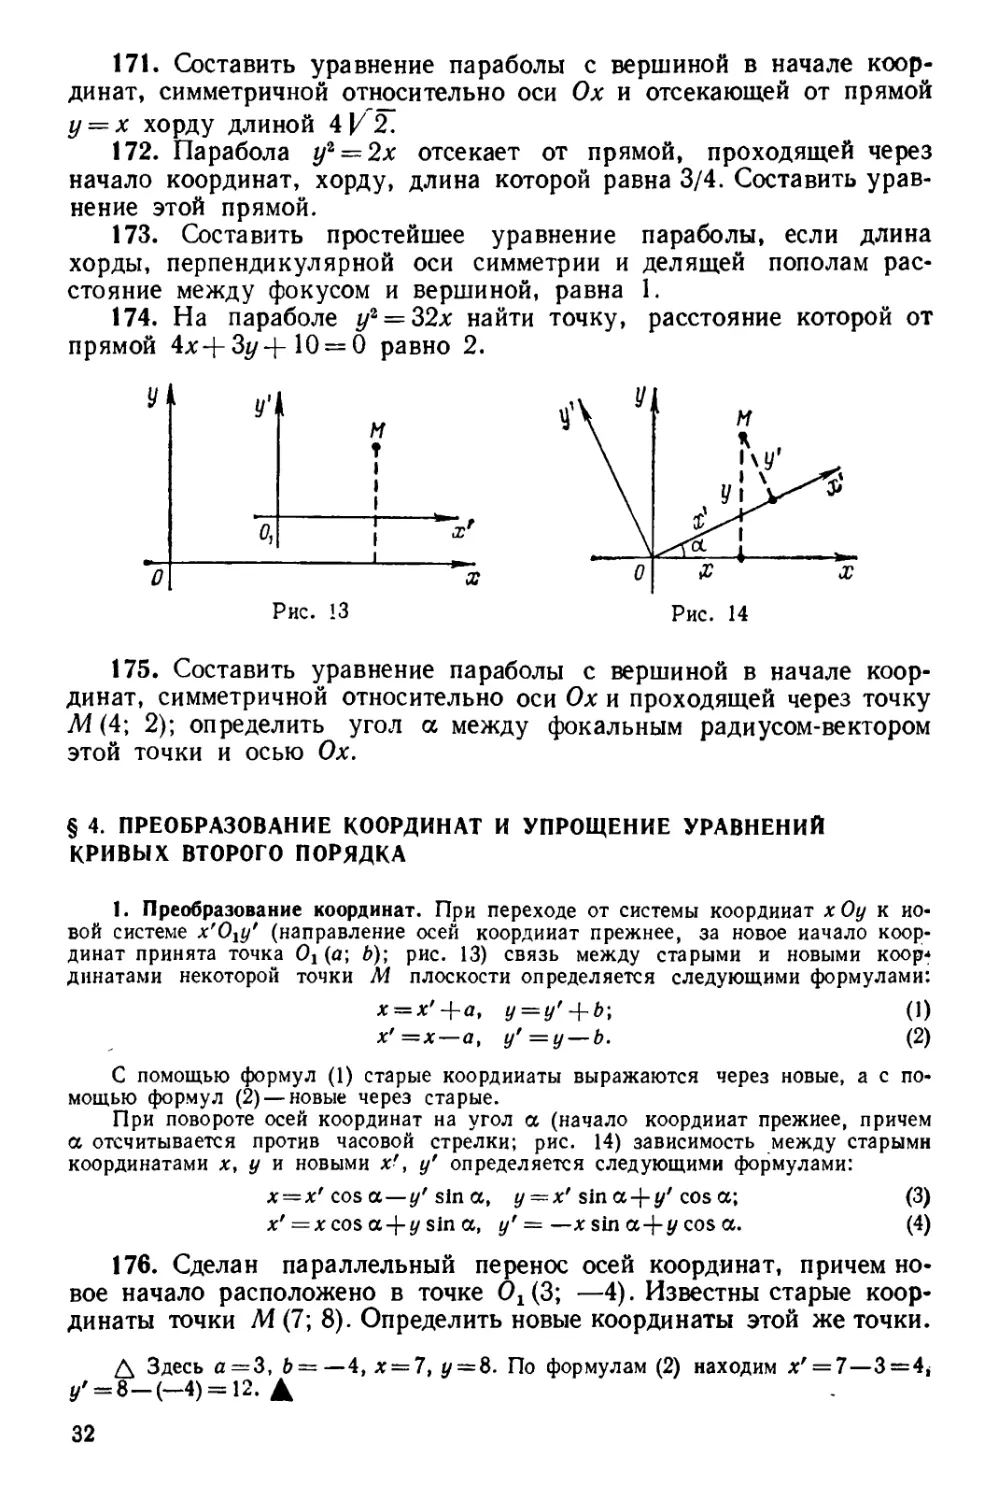 § 4. Преобразование координат и упрощение уравнений кривых второго порядка